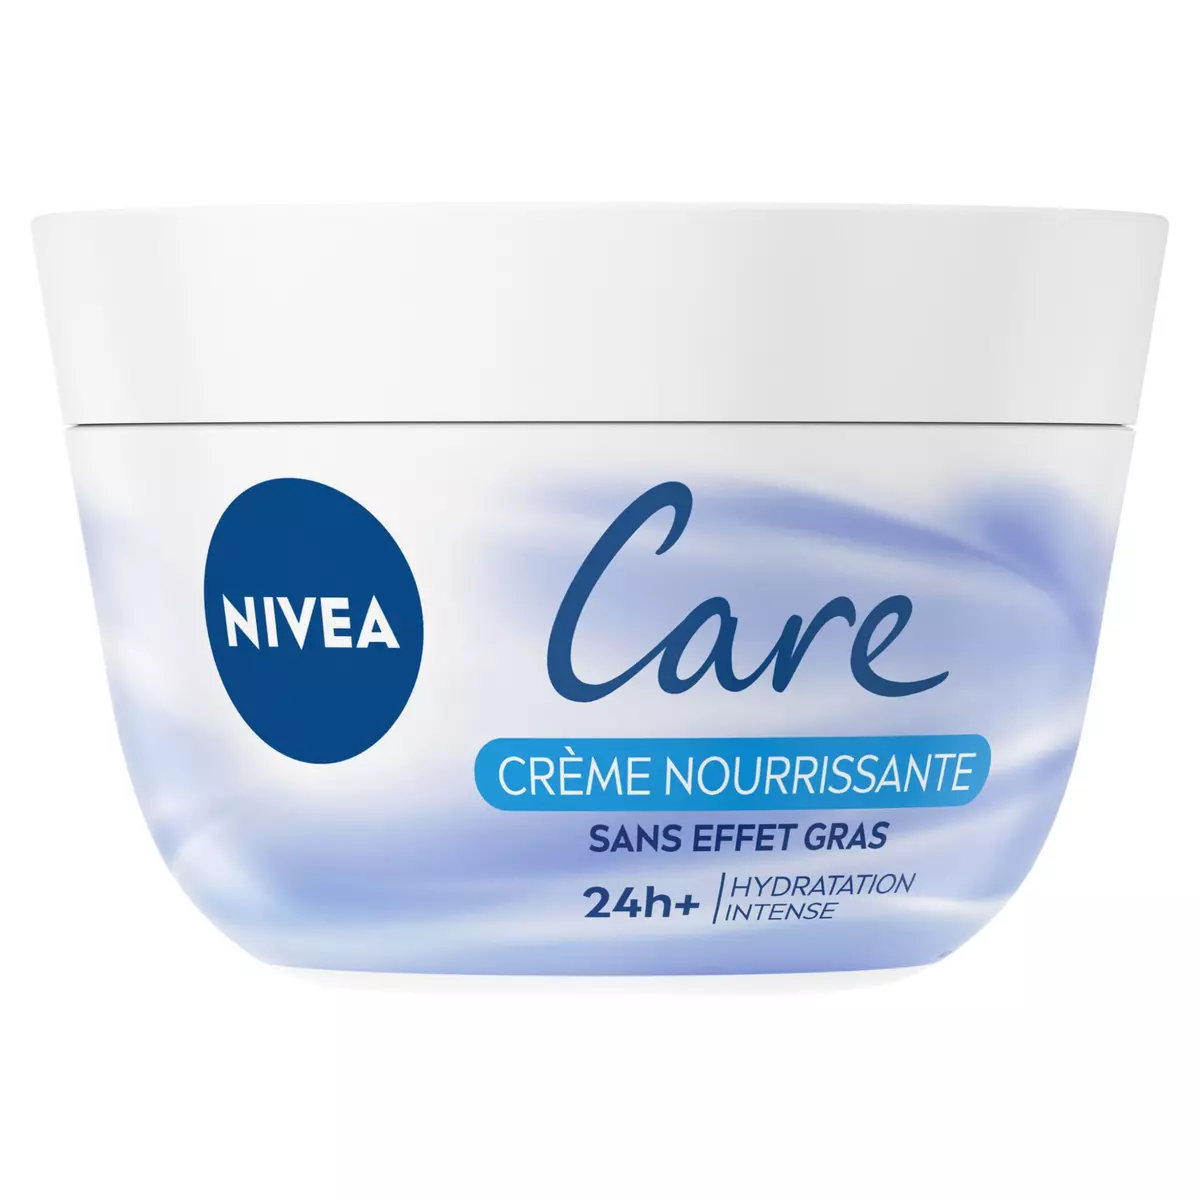 NIVEA Care Crème nourrissante sans effet gras 24h hydratation 200ml